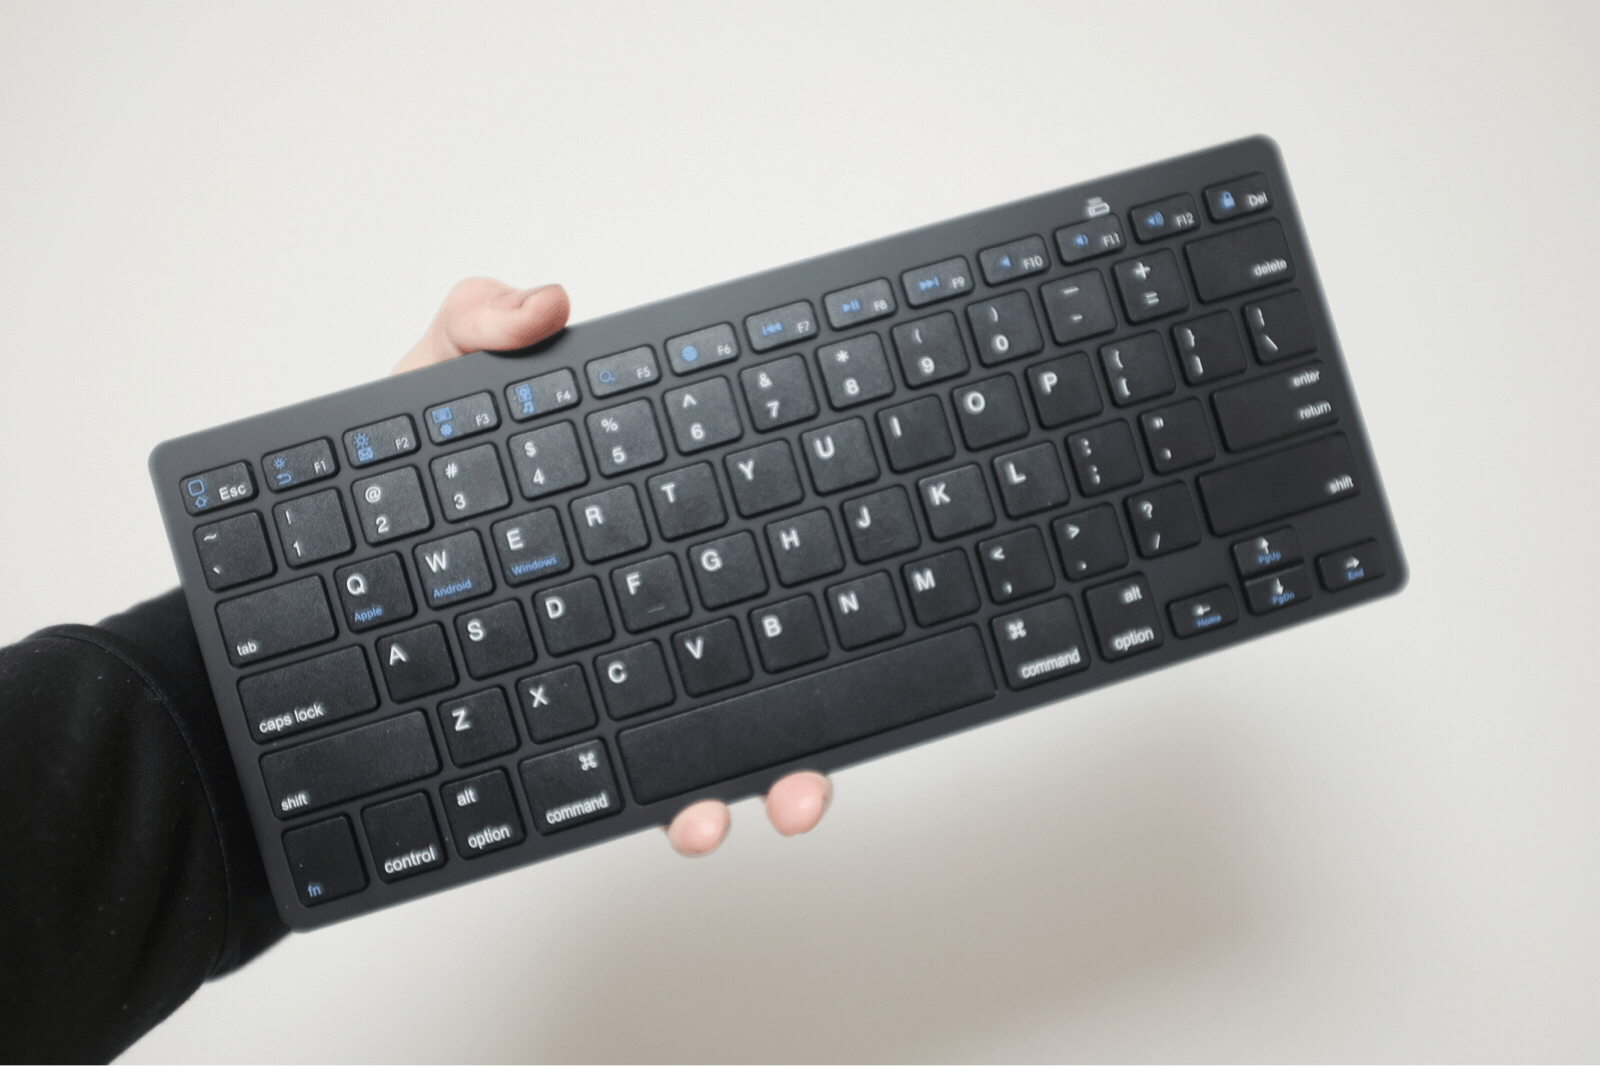 Amazonでわずか3000円で買えるキーボードとマウスでワイヤレス化に成功した 2ldk